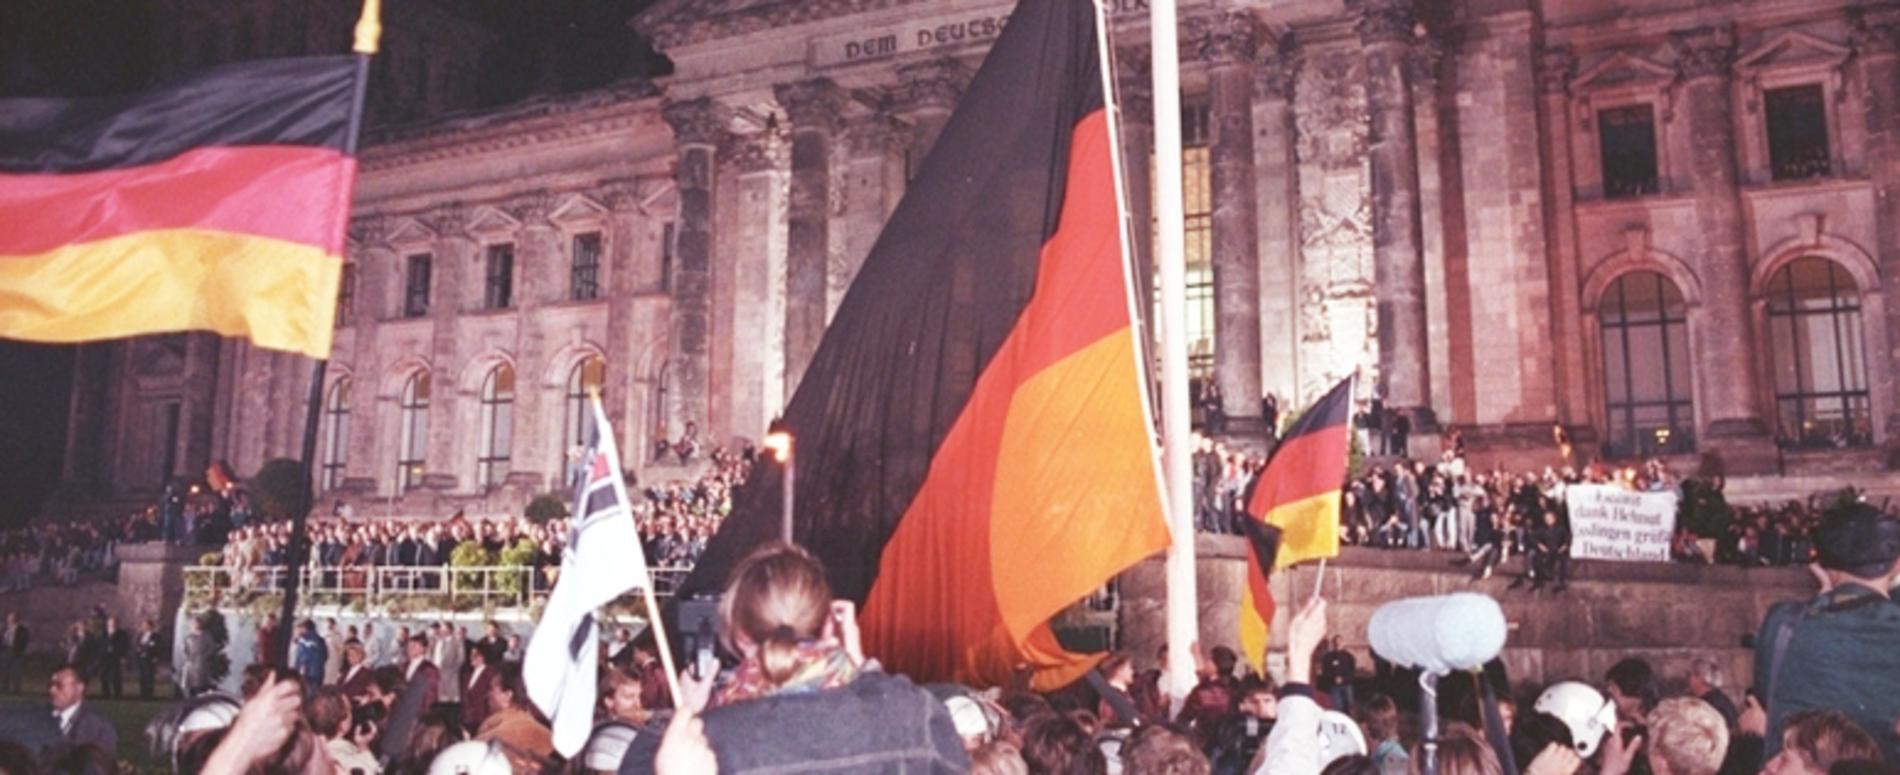 Wiedervereinigung.Hunderttausende Menschen  waren dabei, als vor dem Reichstag die schwarz-rot-goldene Bundesfahne gehisst wurde. 3. Oktober 1990